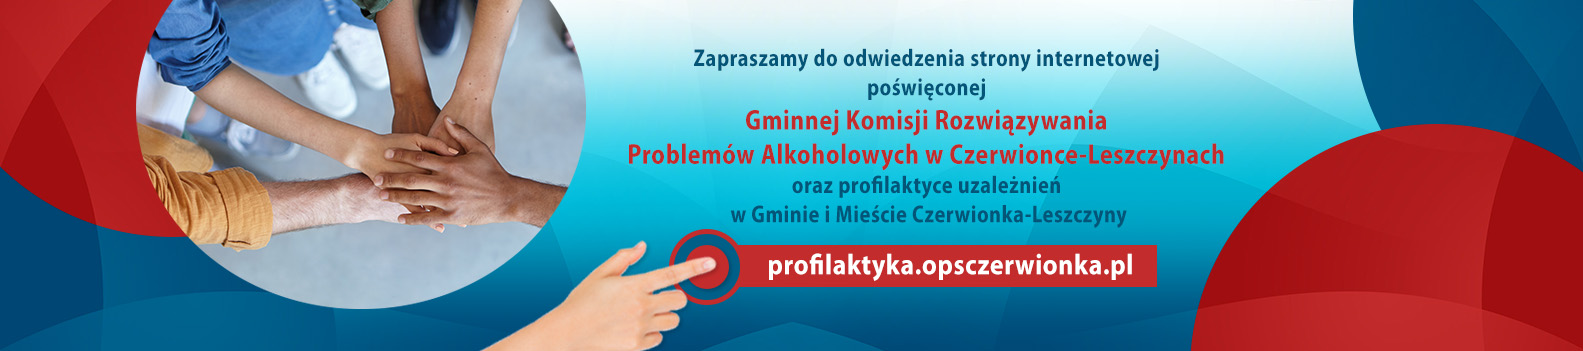 Zapraszamy do odwiedzin strony profilaktyka.opsczerwionka.pl